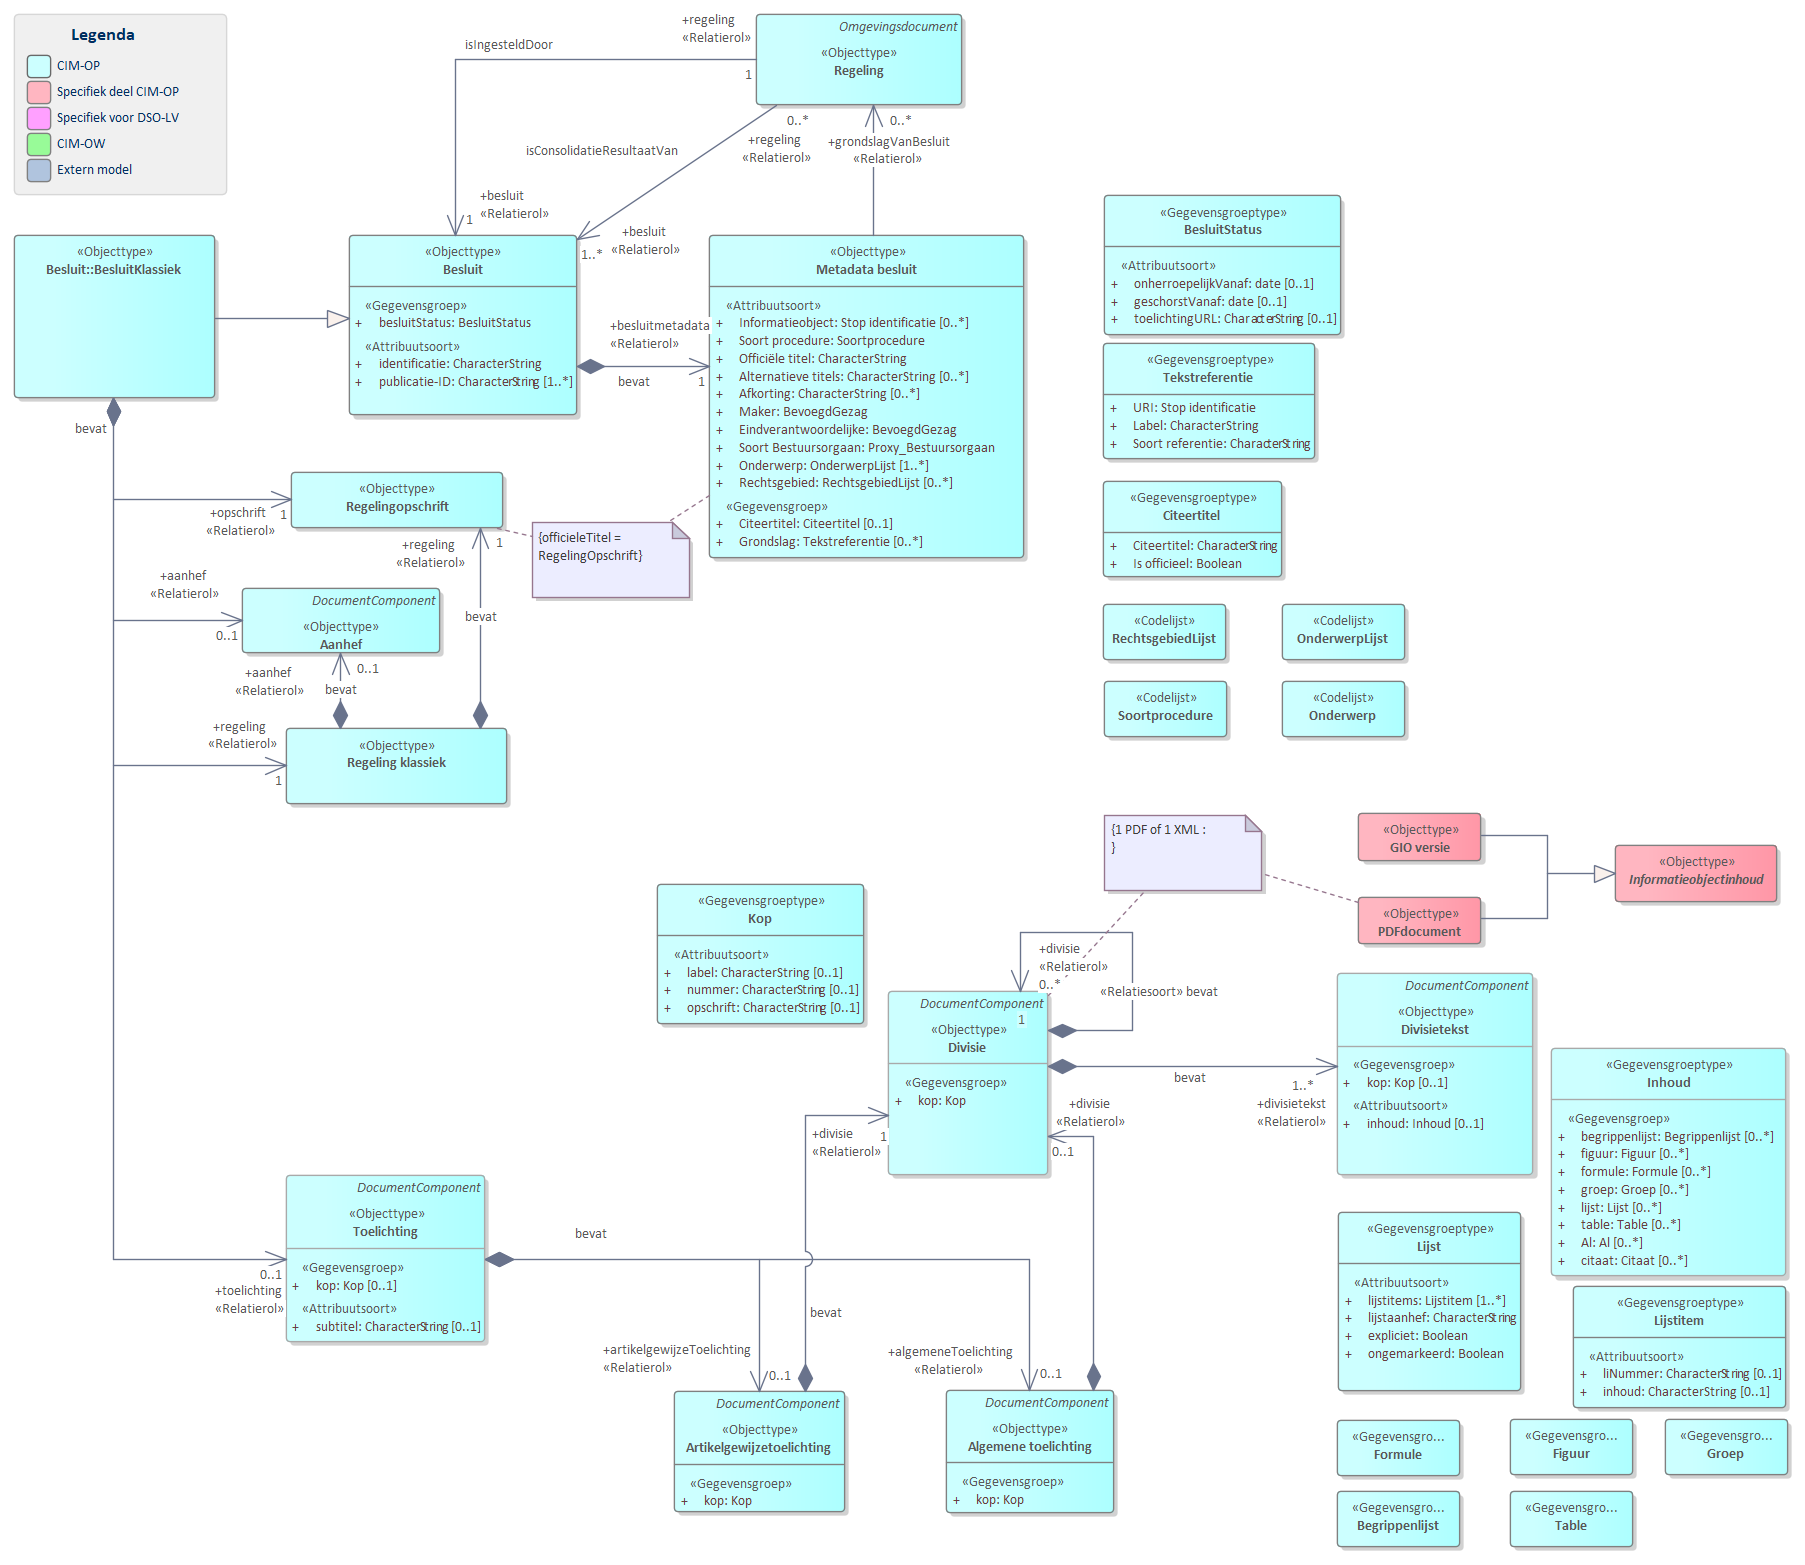 Diagram 
                        UML diagram van BesluitKlassiek.
                        BesluitKlassiek wordt alleen gebruikt voor besluiten bij een intitiële regeling en de geconsolideerde versie van de klassieke regeling. Beide regelingen maken gebruik van het model voor RegelingKlassiek.
                        
                        De basisonderdelen van een BesluitKlassiek zijn:
                        
                        
                           Besluitmetadata bevat de gegevens over een besluit  zoals titel en maker.
                           Opschrift
                           RegelingKlassiek
                           Toelichting
                        
                        
                        
                        
                           
                              
                                 Referentie naar STOP
                              
                           
                        
                        
                        
                     